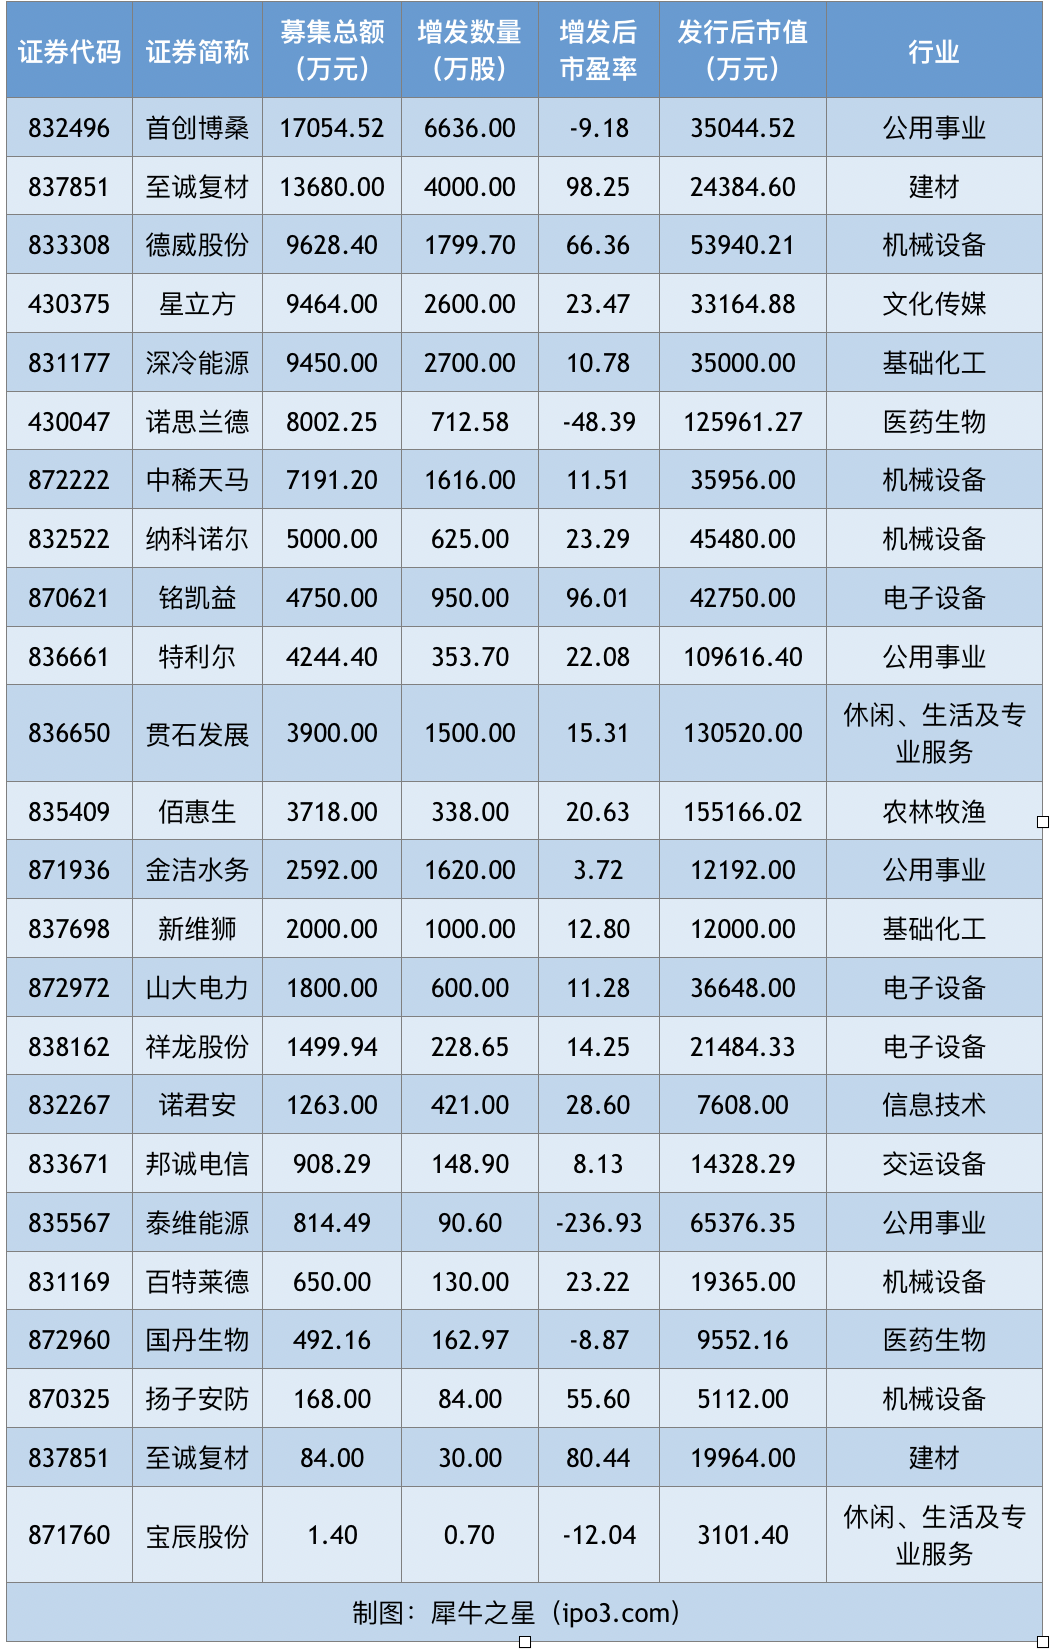 【新三板周报】 24家企业获18.87亿融资 新三板优化做市业务 允许做市库存股回转售 中国金融观察网www.chinaesm.com